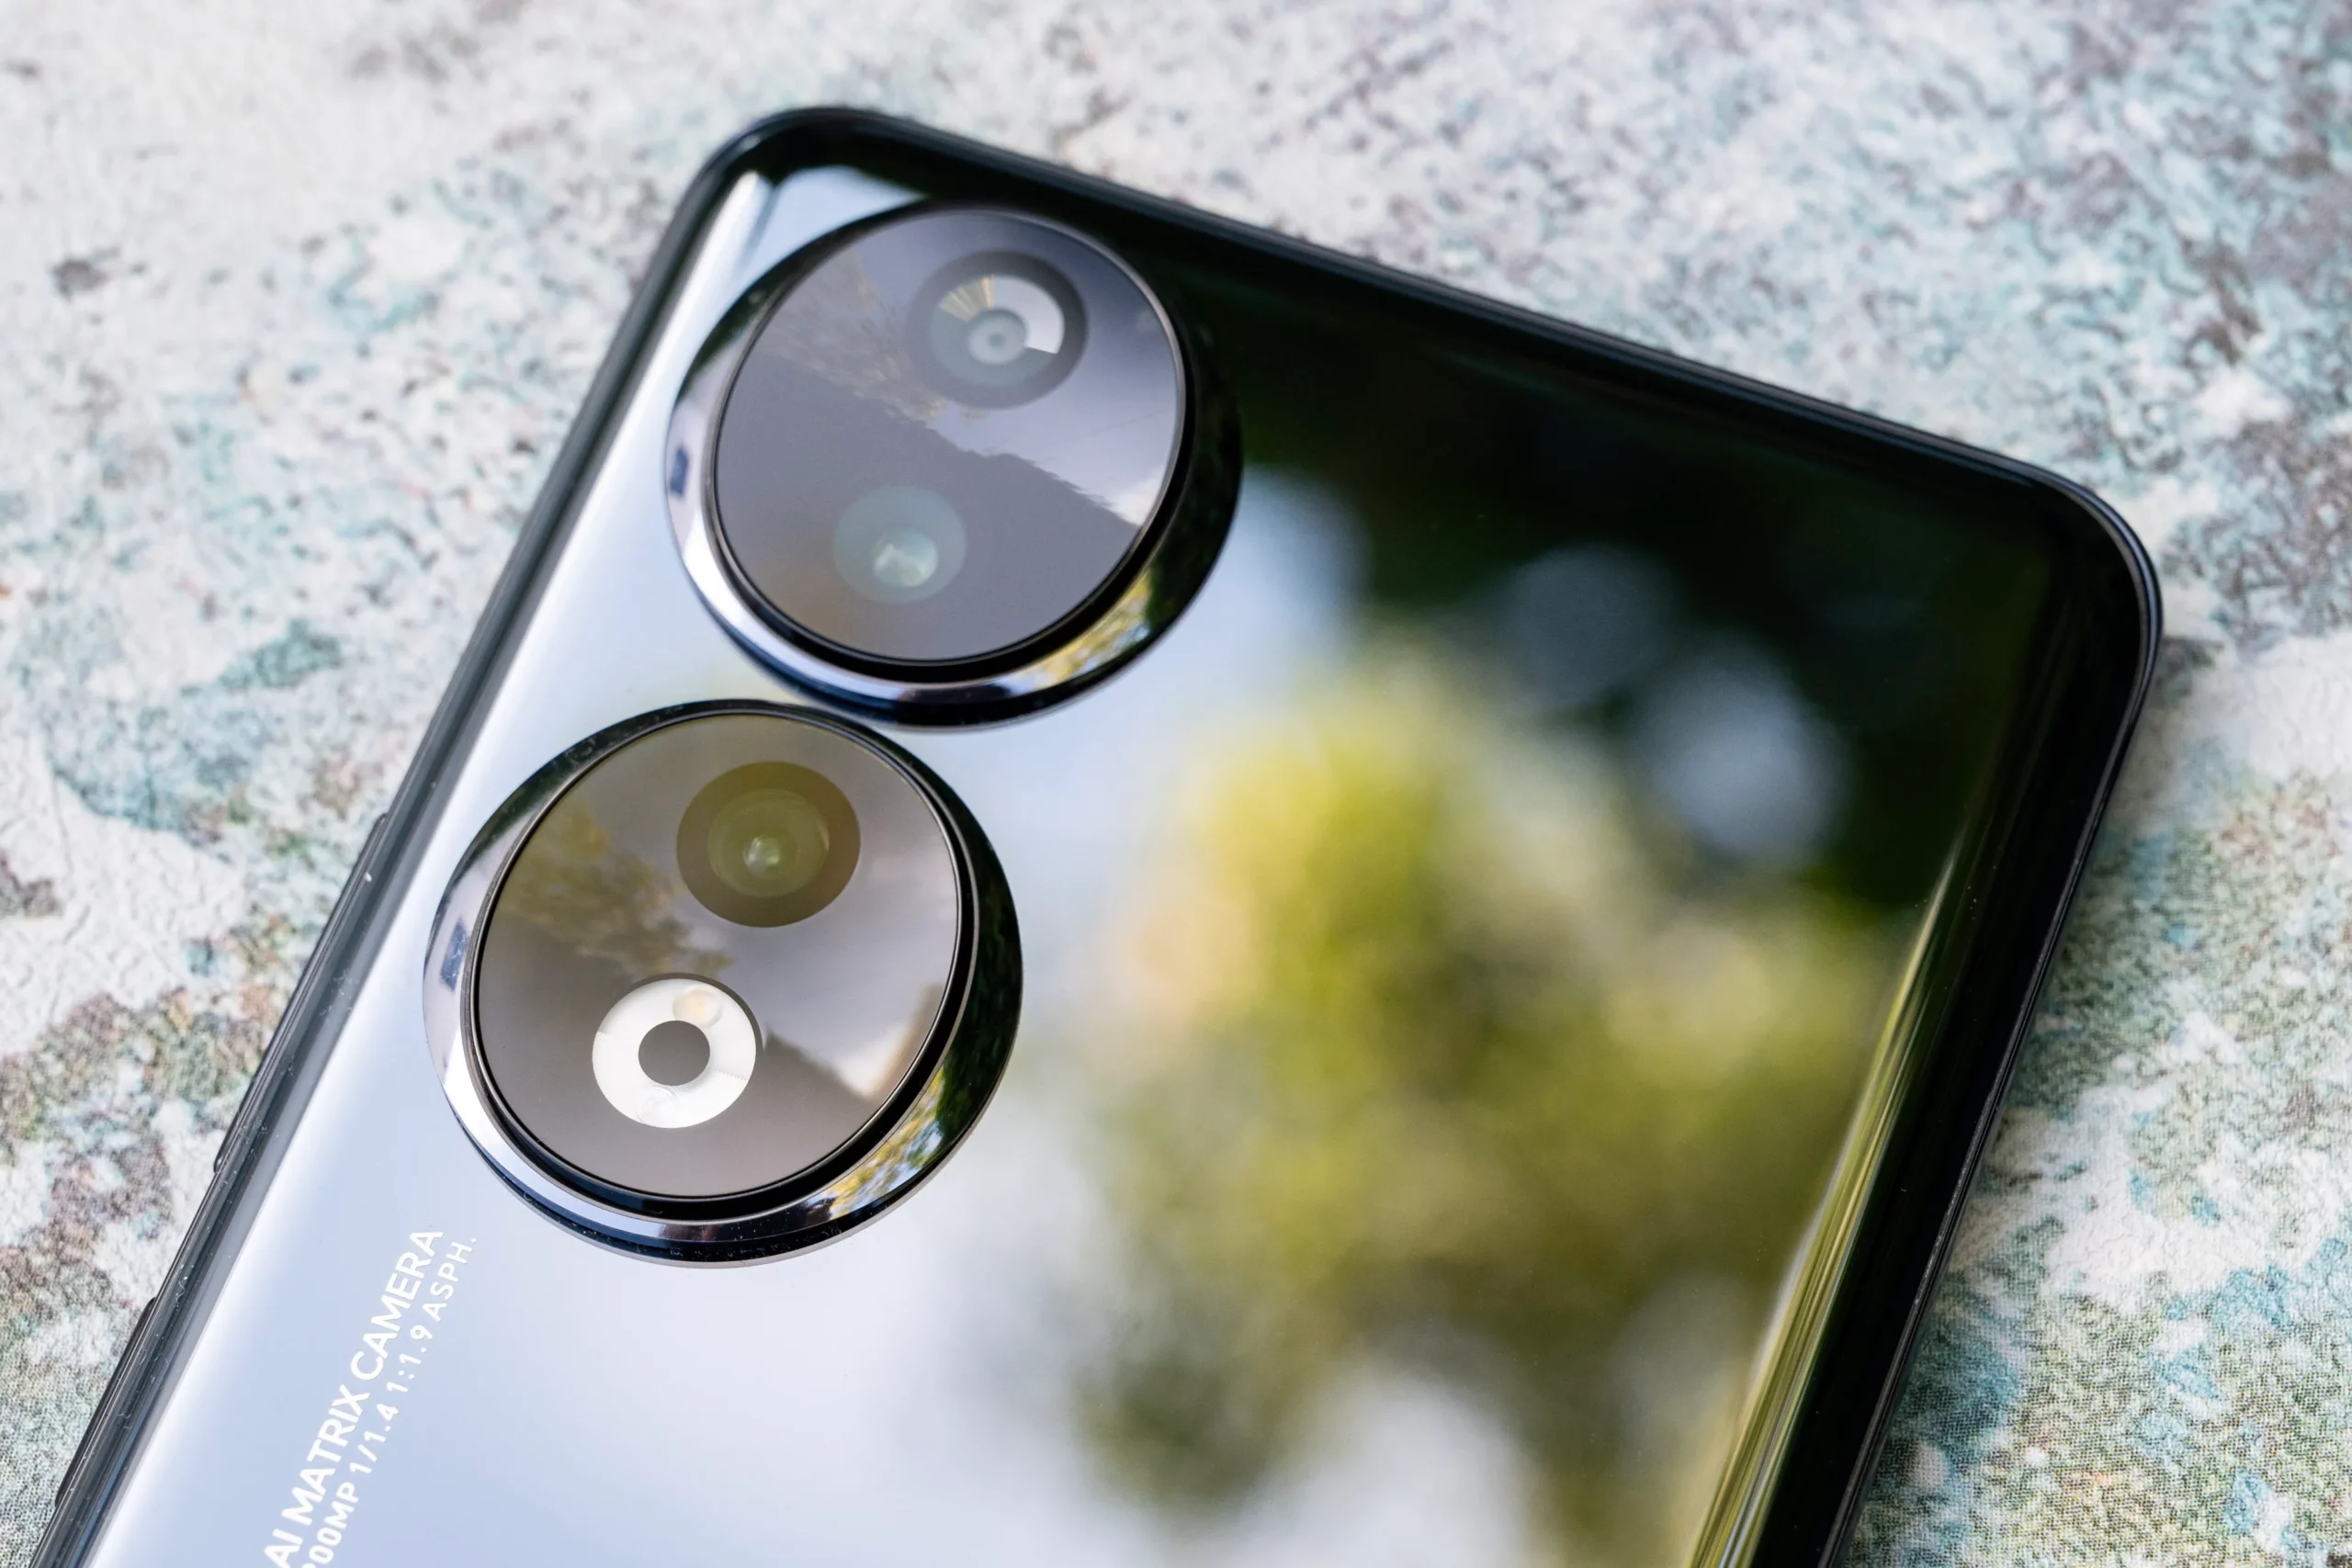 OnePlus का घमंड तोड़ने आ रहा Smartphone की दुनिया का बाप, 200MP कैमरे के साथ इतरा-इतरा के करेगा फोटू क्लिक